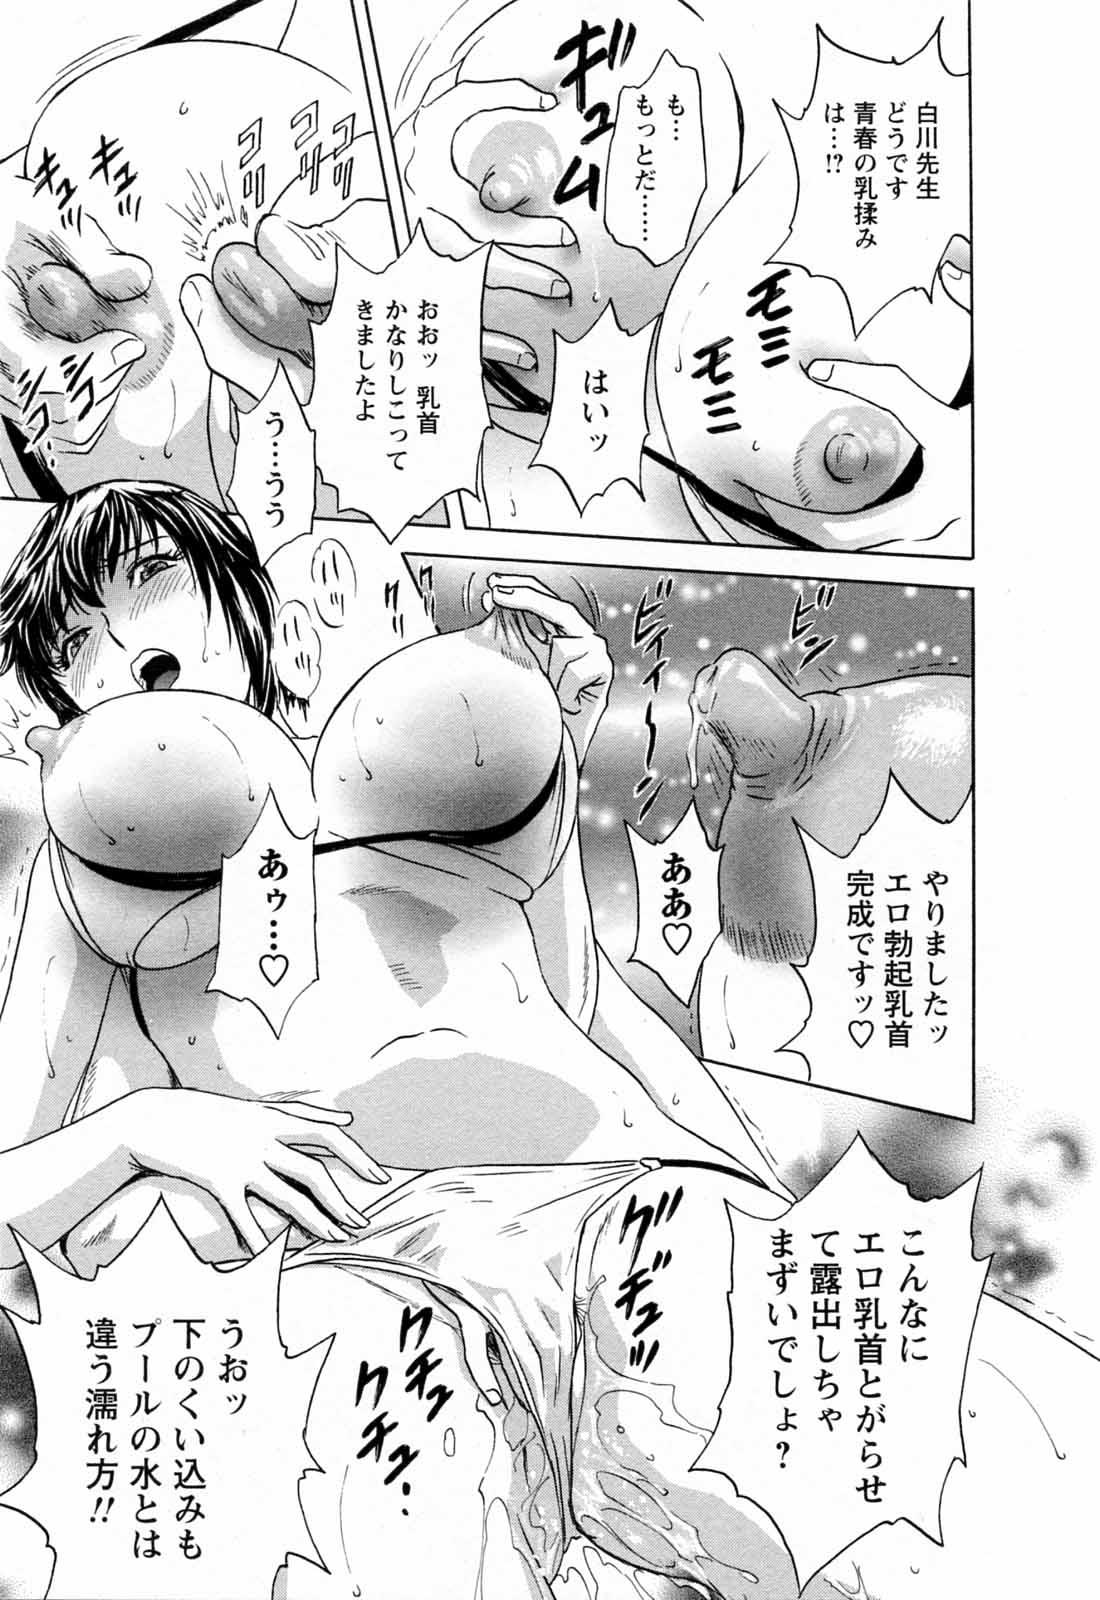 [Hidemaru] Mo-Retsu! Boin Sensei (Boing Boing Teacher) Vol.5 128